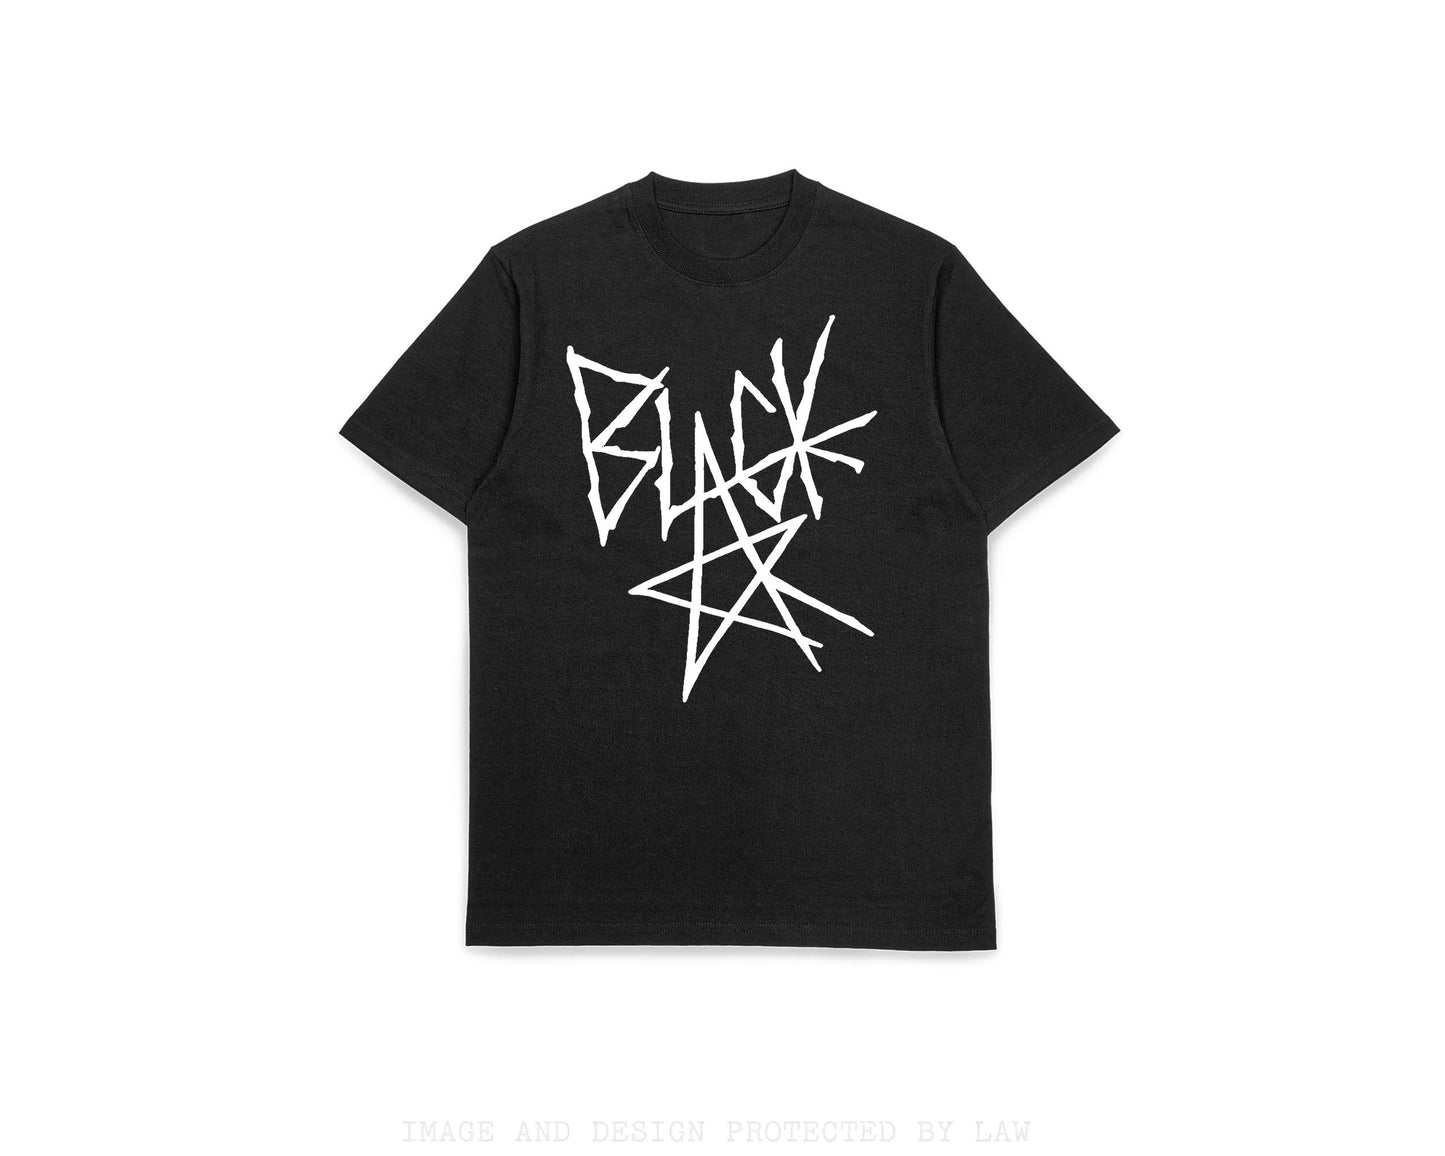 Black Stars shirt